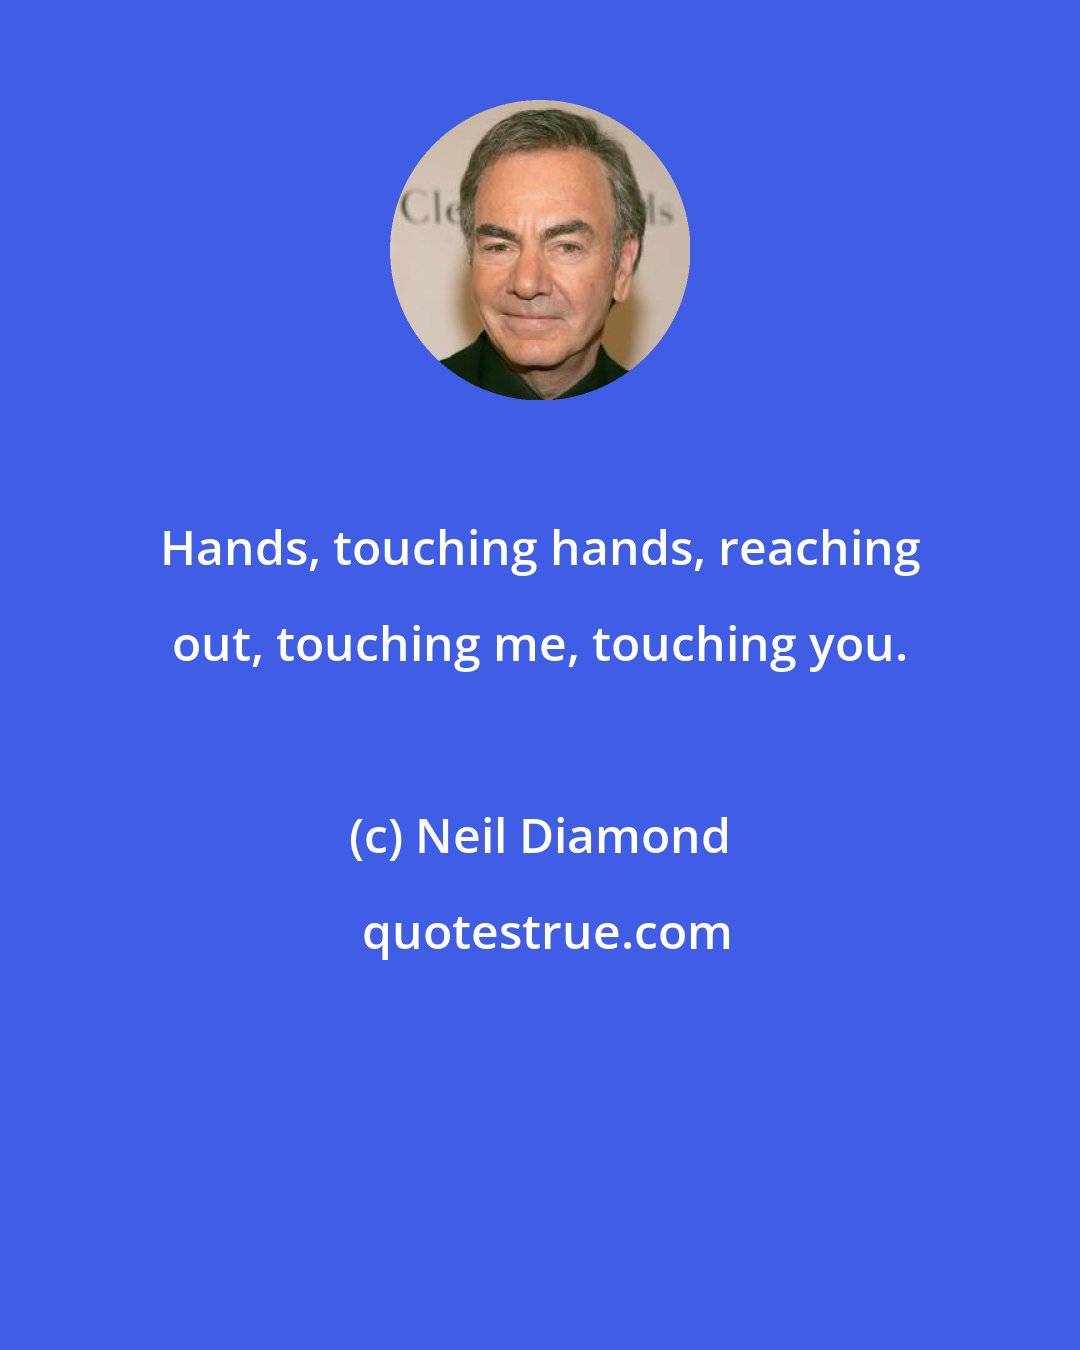 Neil Diamond: Hands, touching hands, reaching out, touching me, touching you.